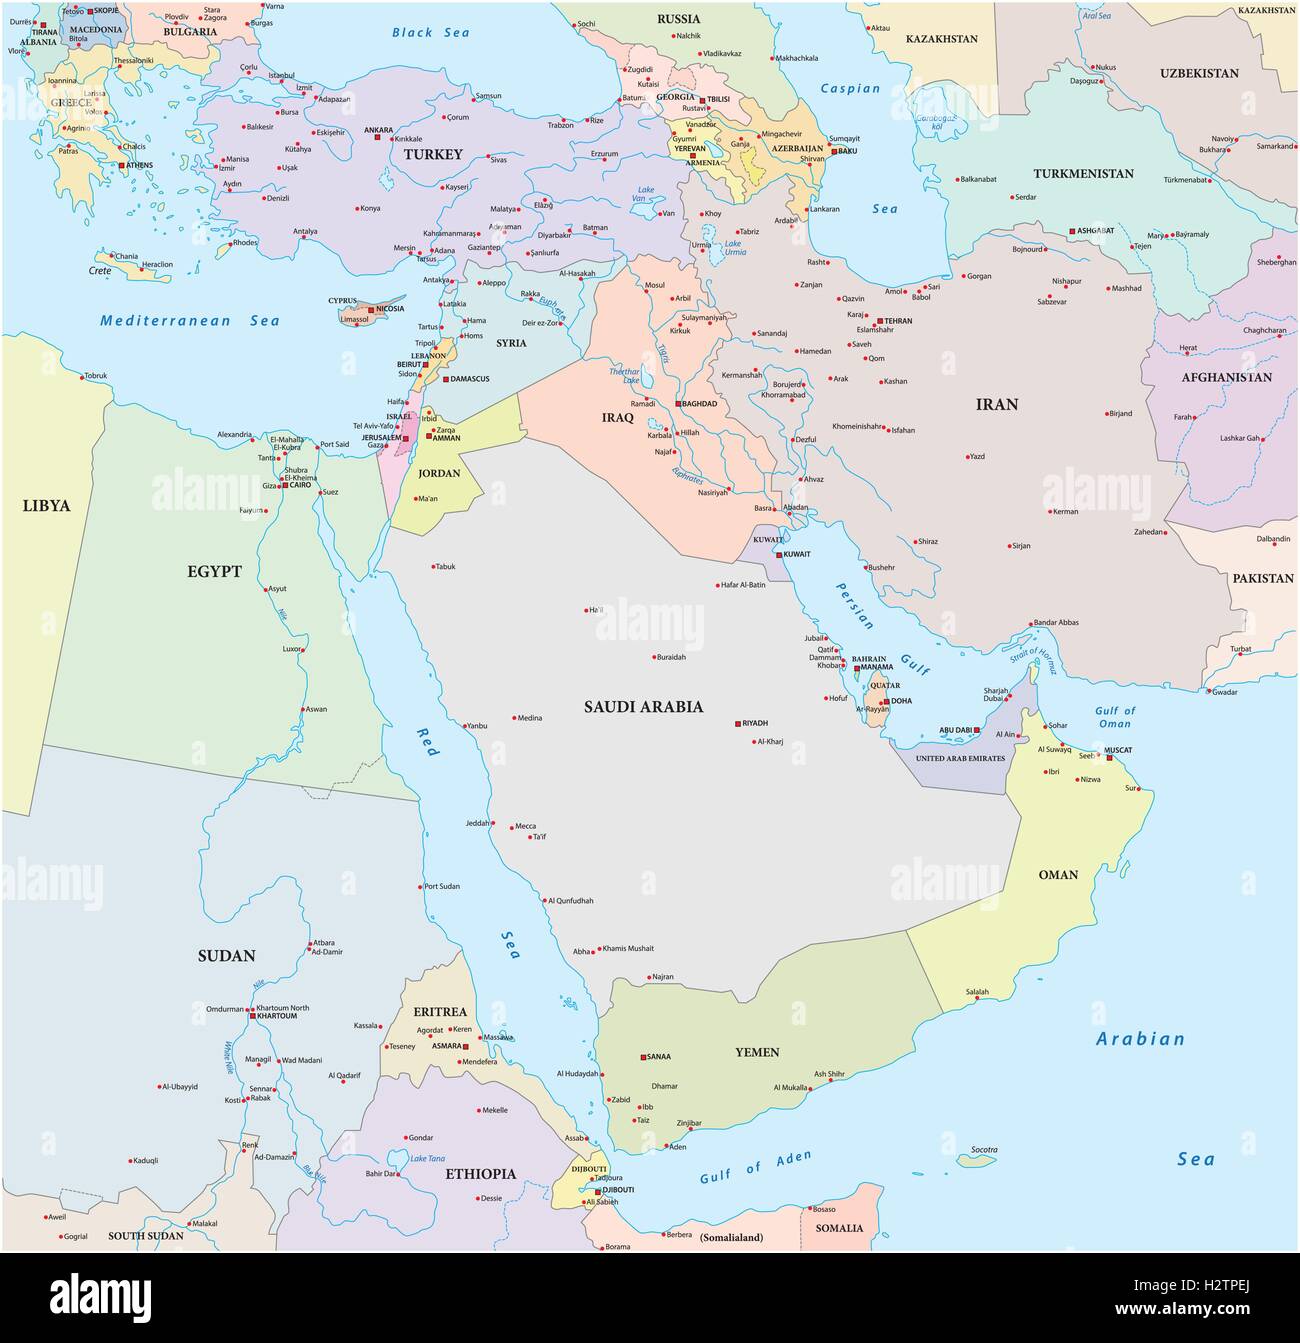 Mapas De Oriente Medio Vector De Mapa Politico De Oriente Medio Con Images